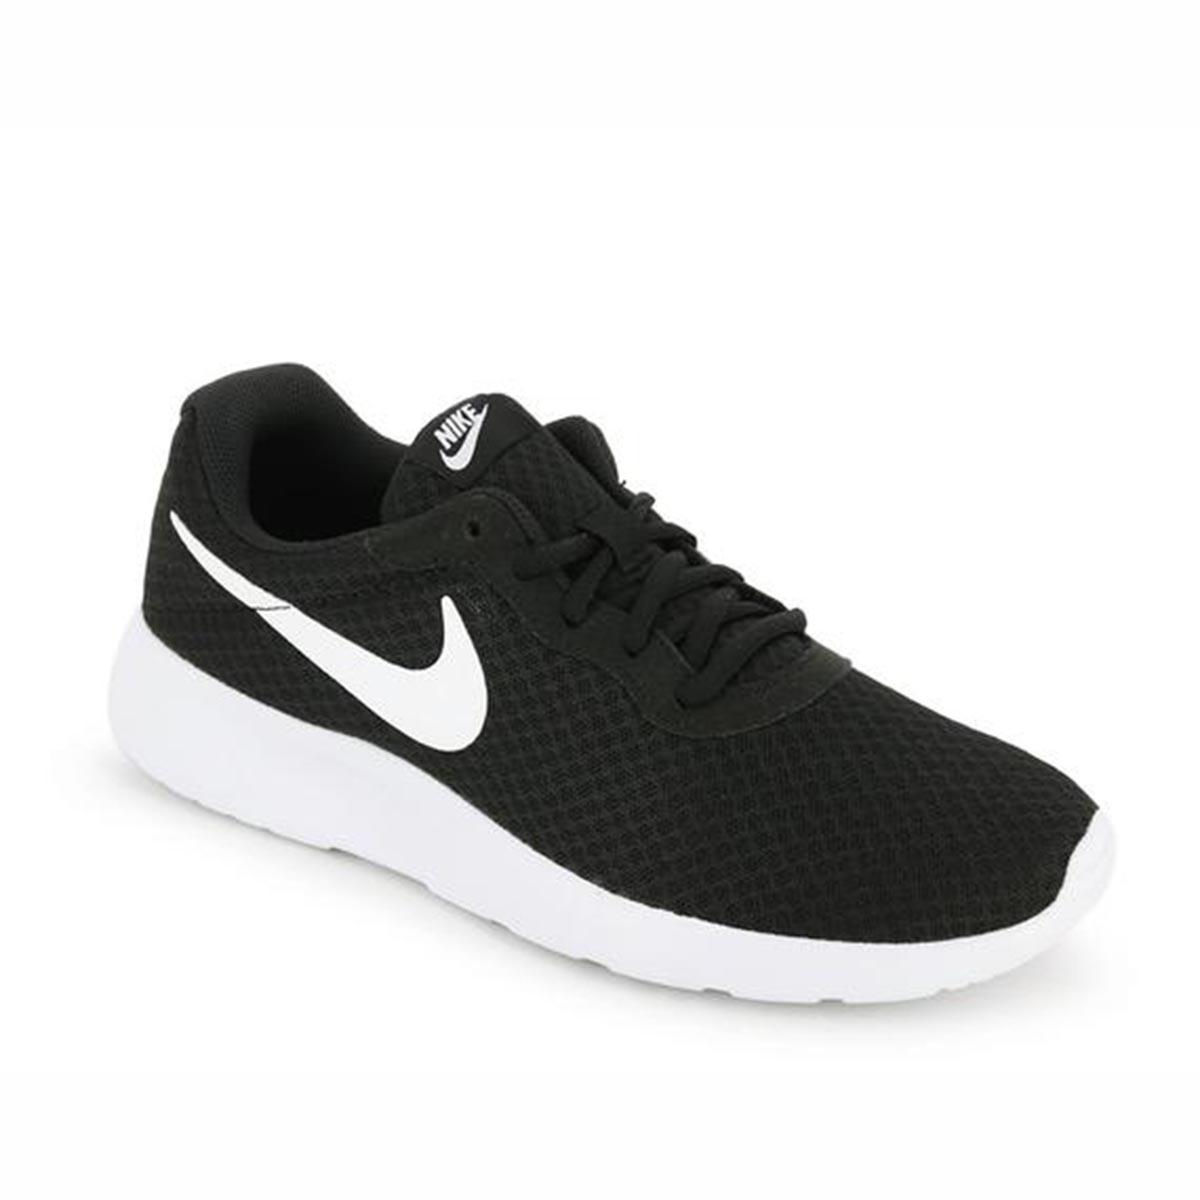 Buy Nike Tanjun Running Shoes (Black/White) Online